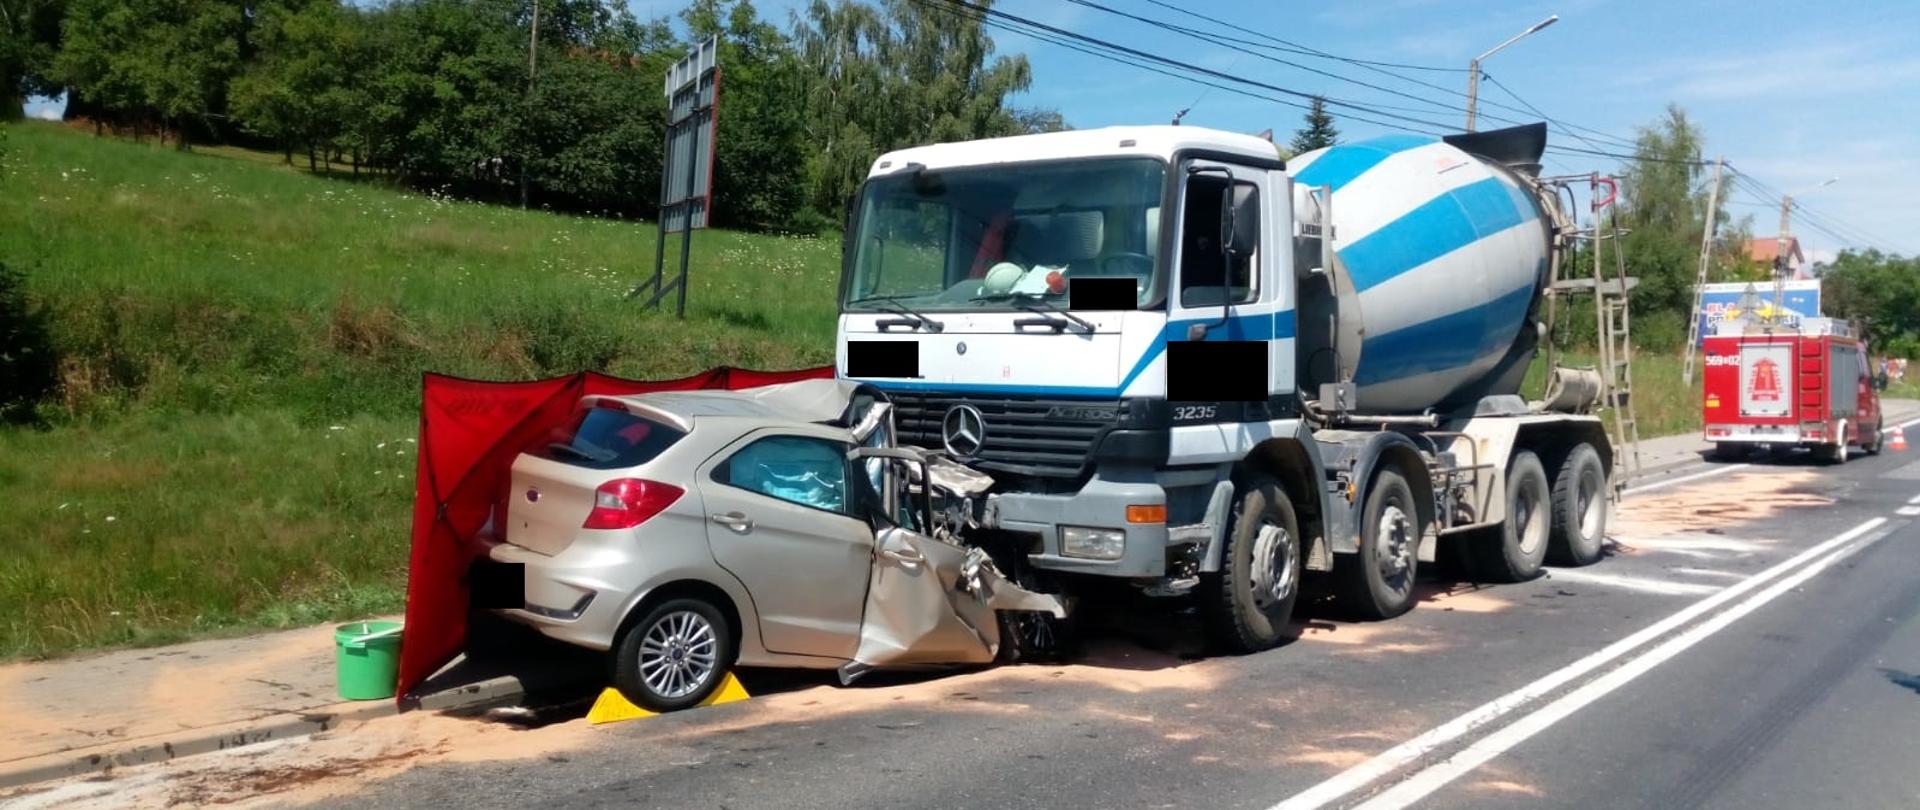 Na zdjęciu widać samochód ciężarowy typu betoniarka do przewozu betonu oraz wrak samochodu osobowego po zderzeniu czołowym. W tle samochód ratowniczo gaśniczy OSP oraz drzewa.